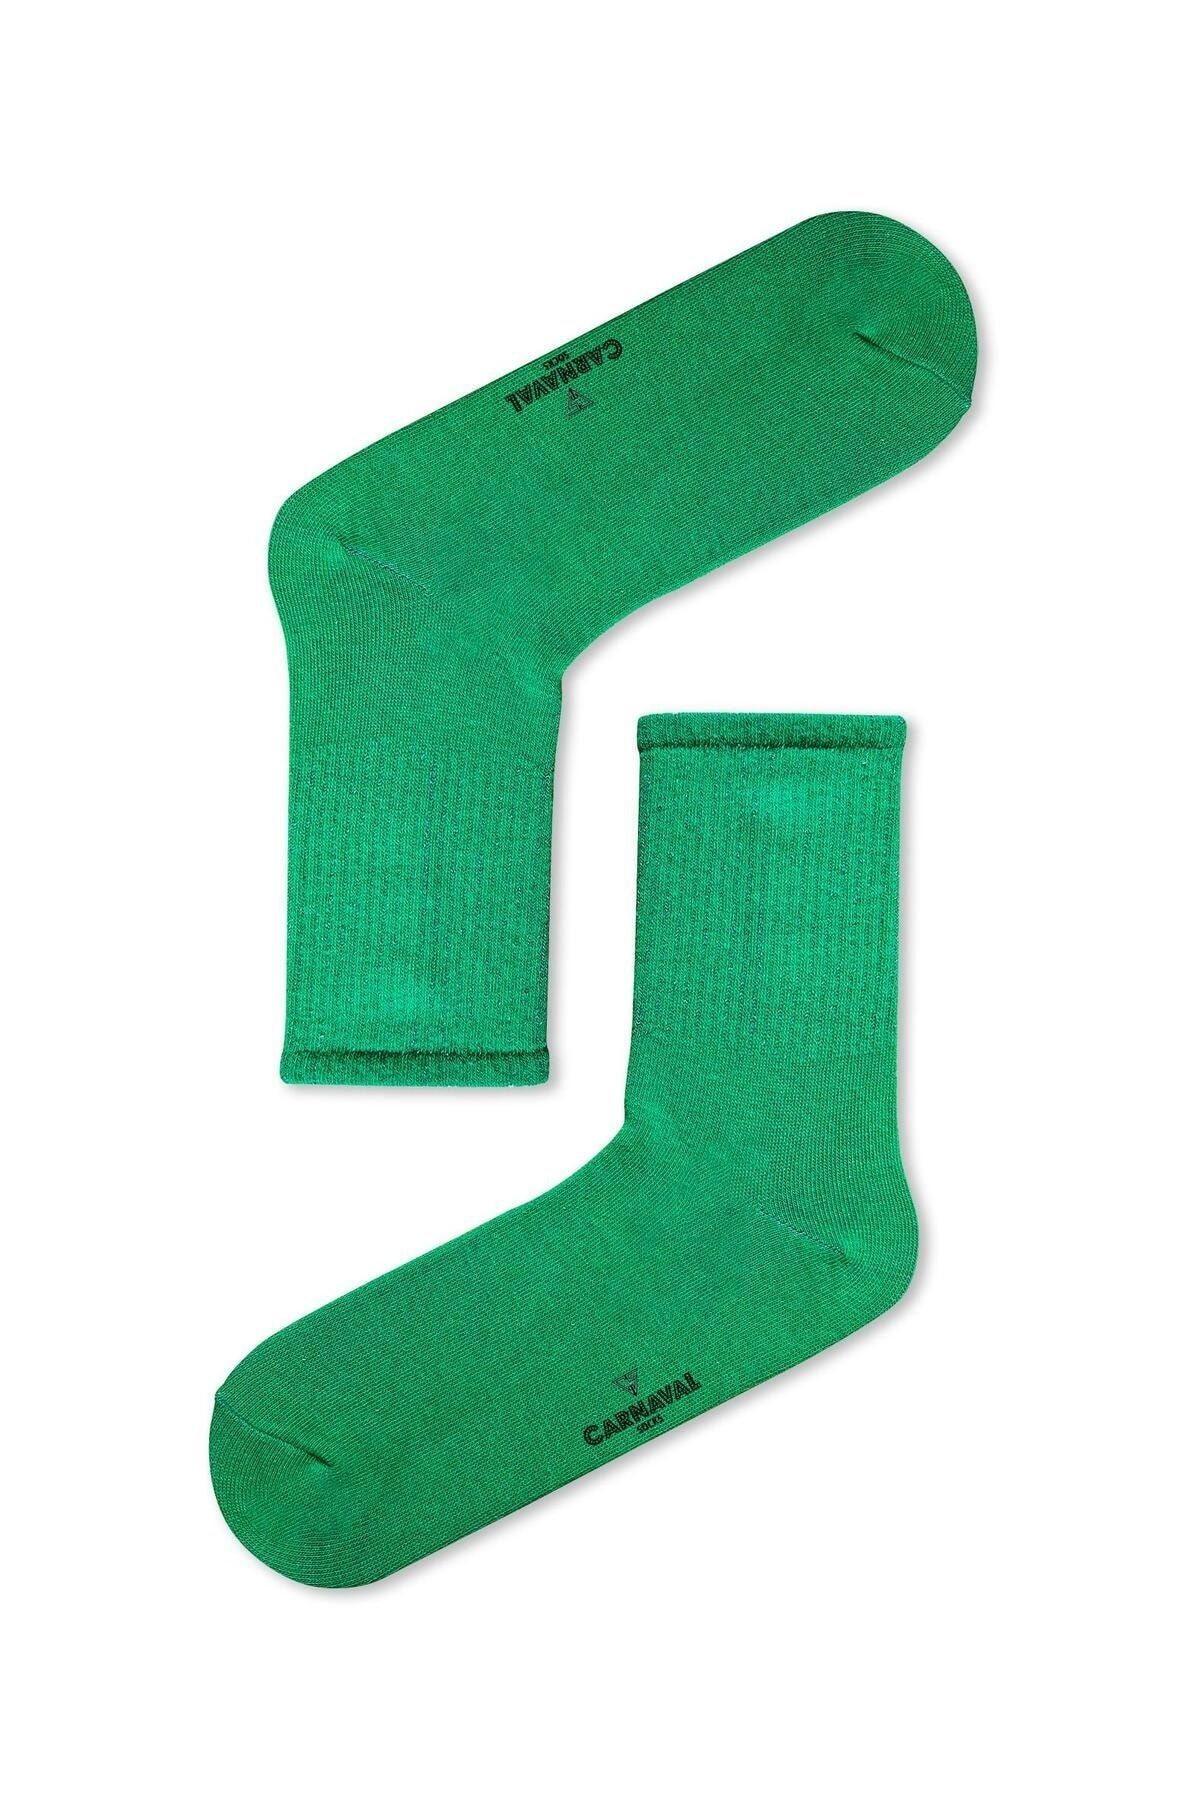 CARNAVAL SOCKS Düz Yeşil Desensiz Renkli Spor Çorap